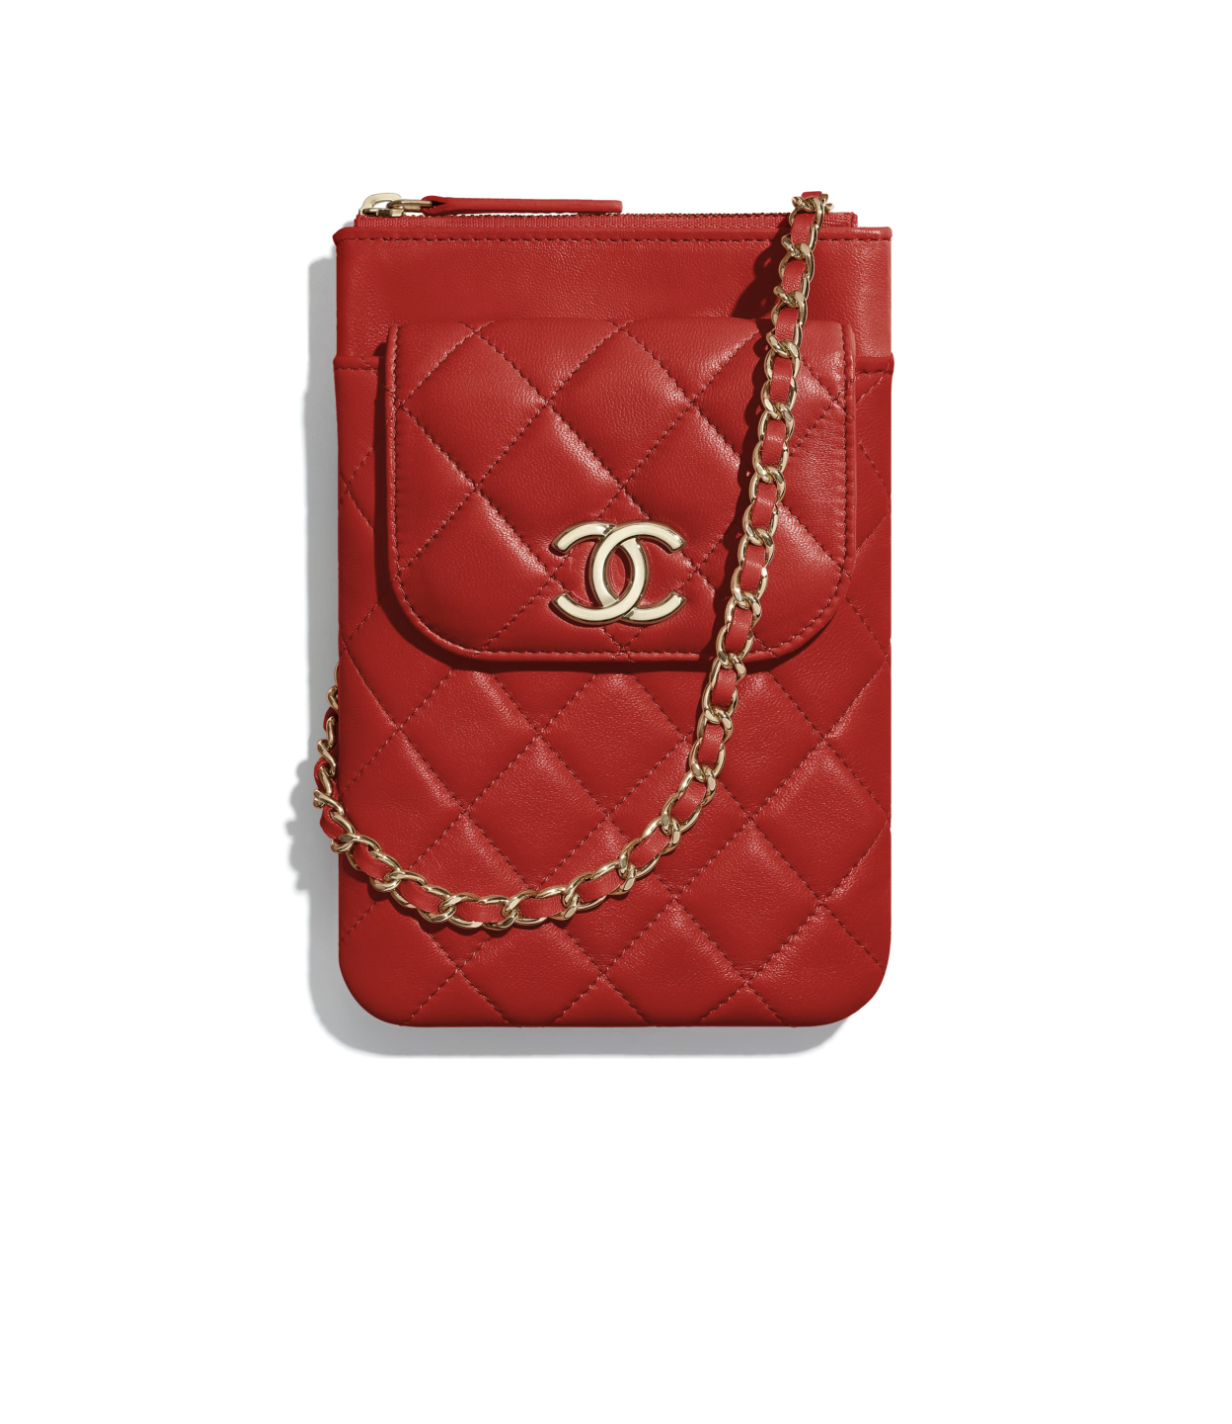 名牌手機袋推薦！Chanel、Buberry及Gucci手機袋還可以當迷你手袋及銀包使用